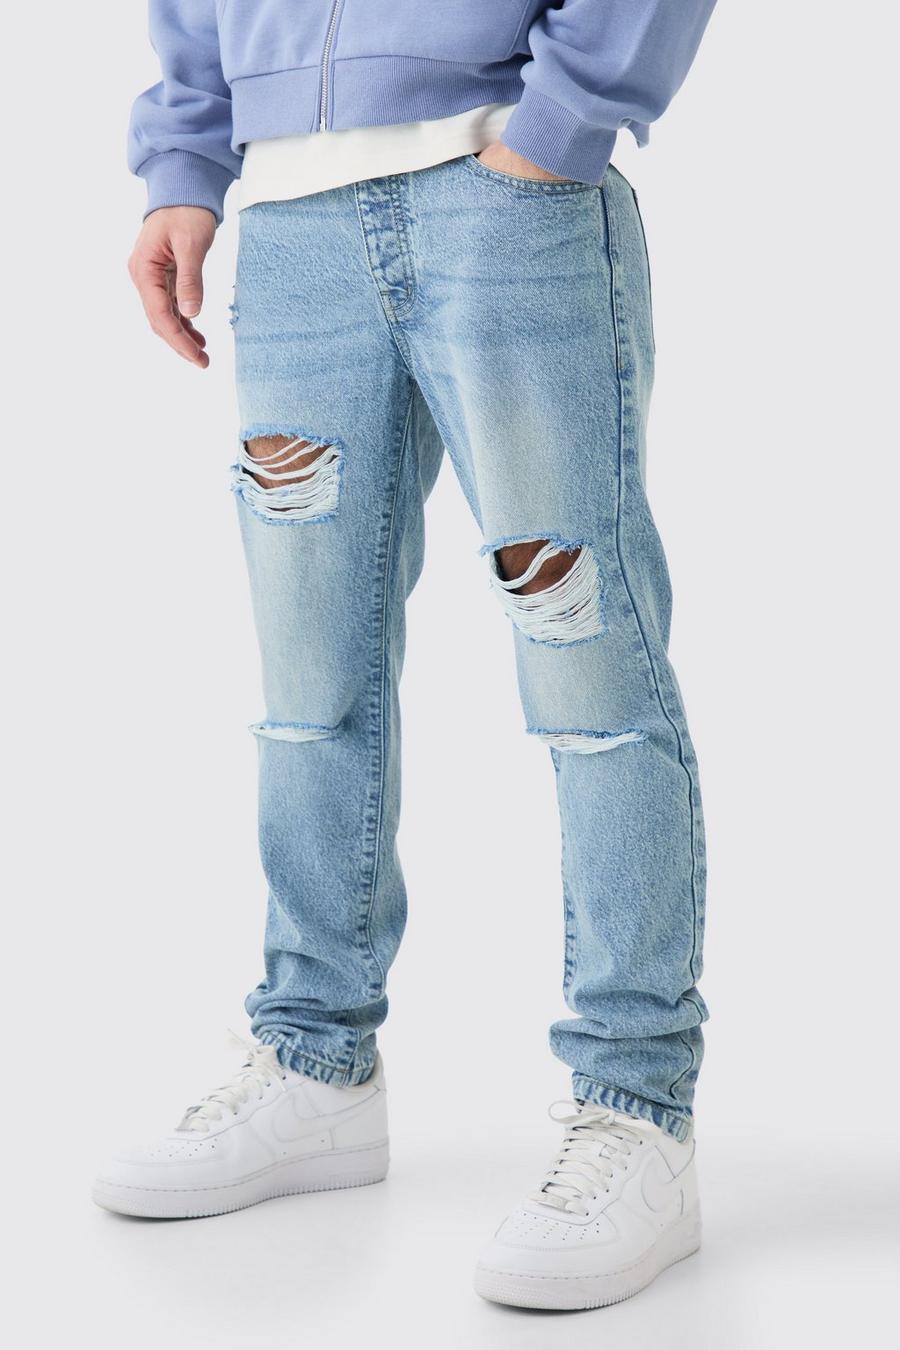 Jeans Slim Fit in denim rigido azzurro con strappi all over, Light blue